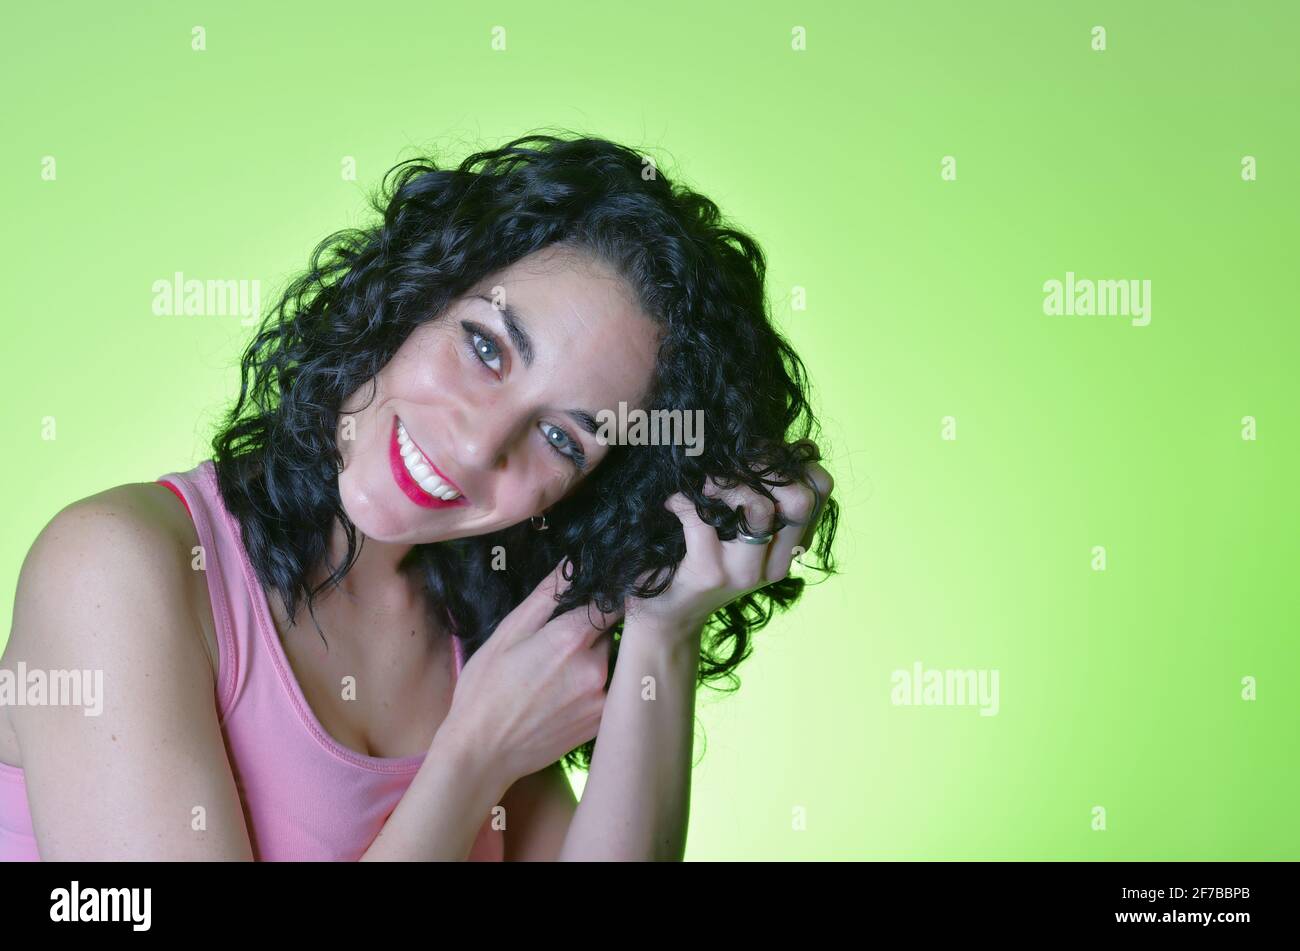 giovane donna con capelli neri ricci e occhi verdi prendendosi cura dei suoi capelli ricci e seguendo il metodo della ragazza ricci. concetto di cura dei capelli. backgroun verde Foto Stock